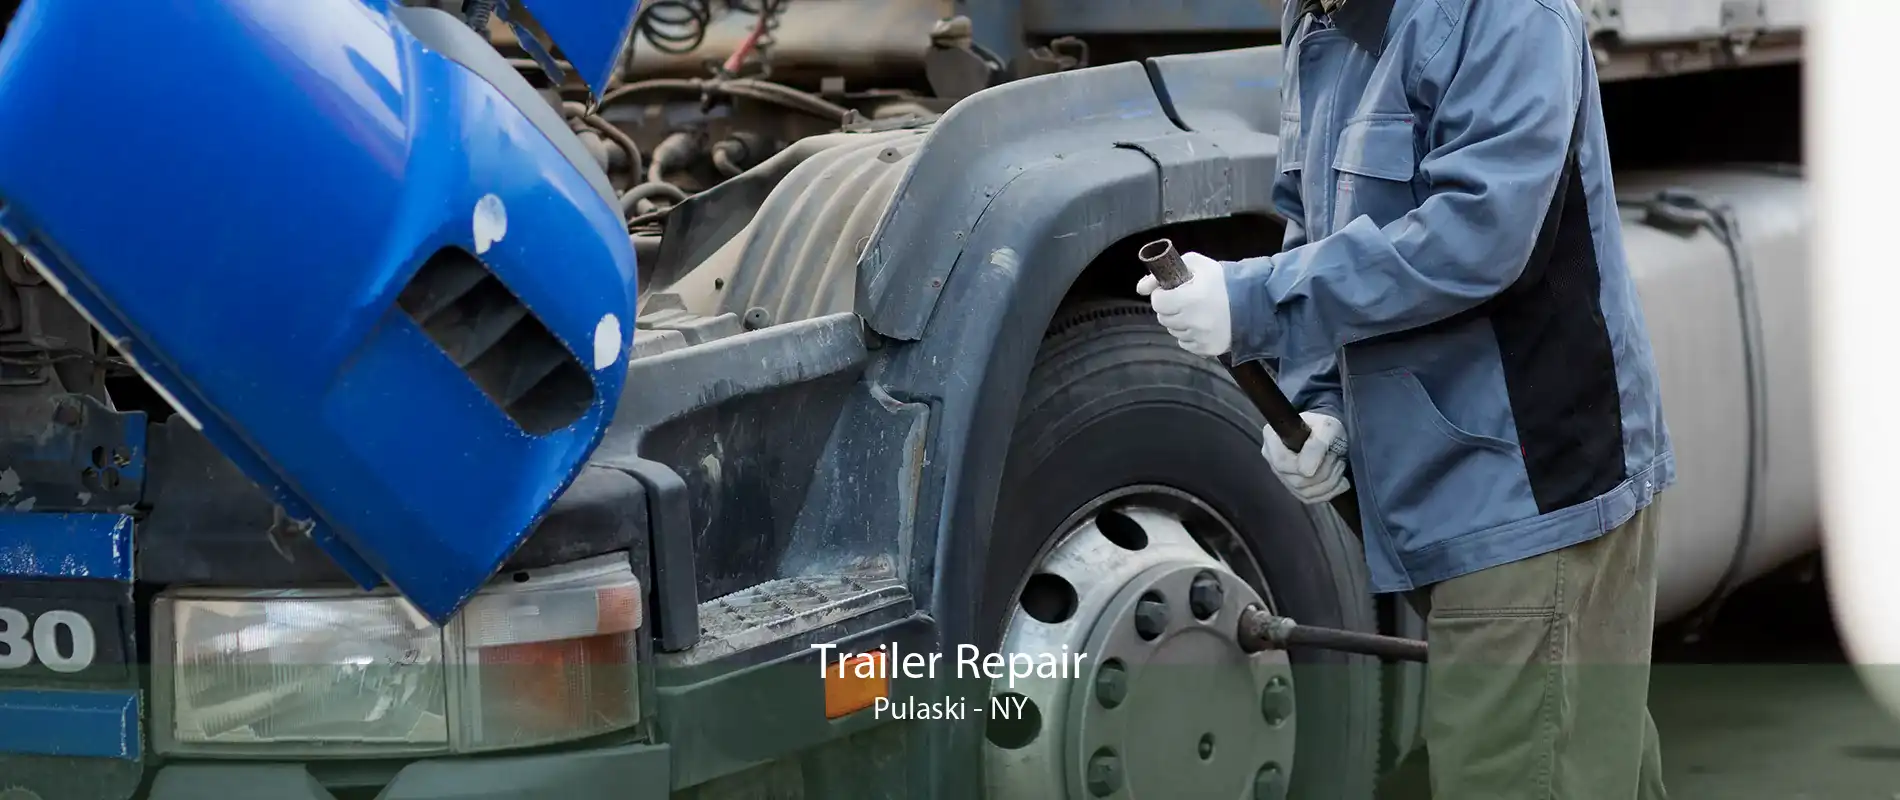 Trailer Repair Pulaski - NY